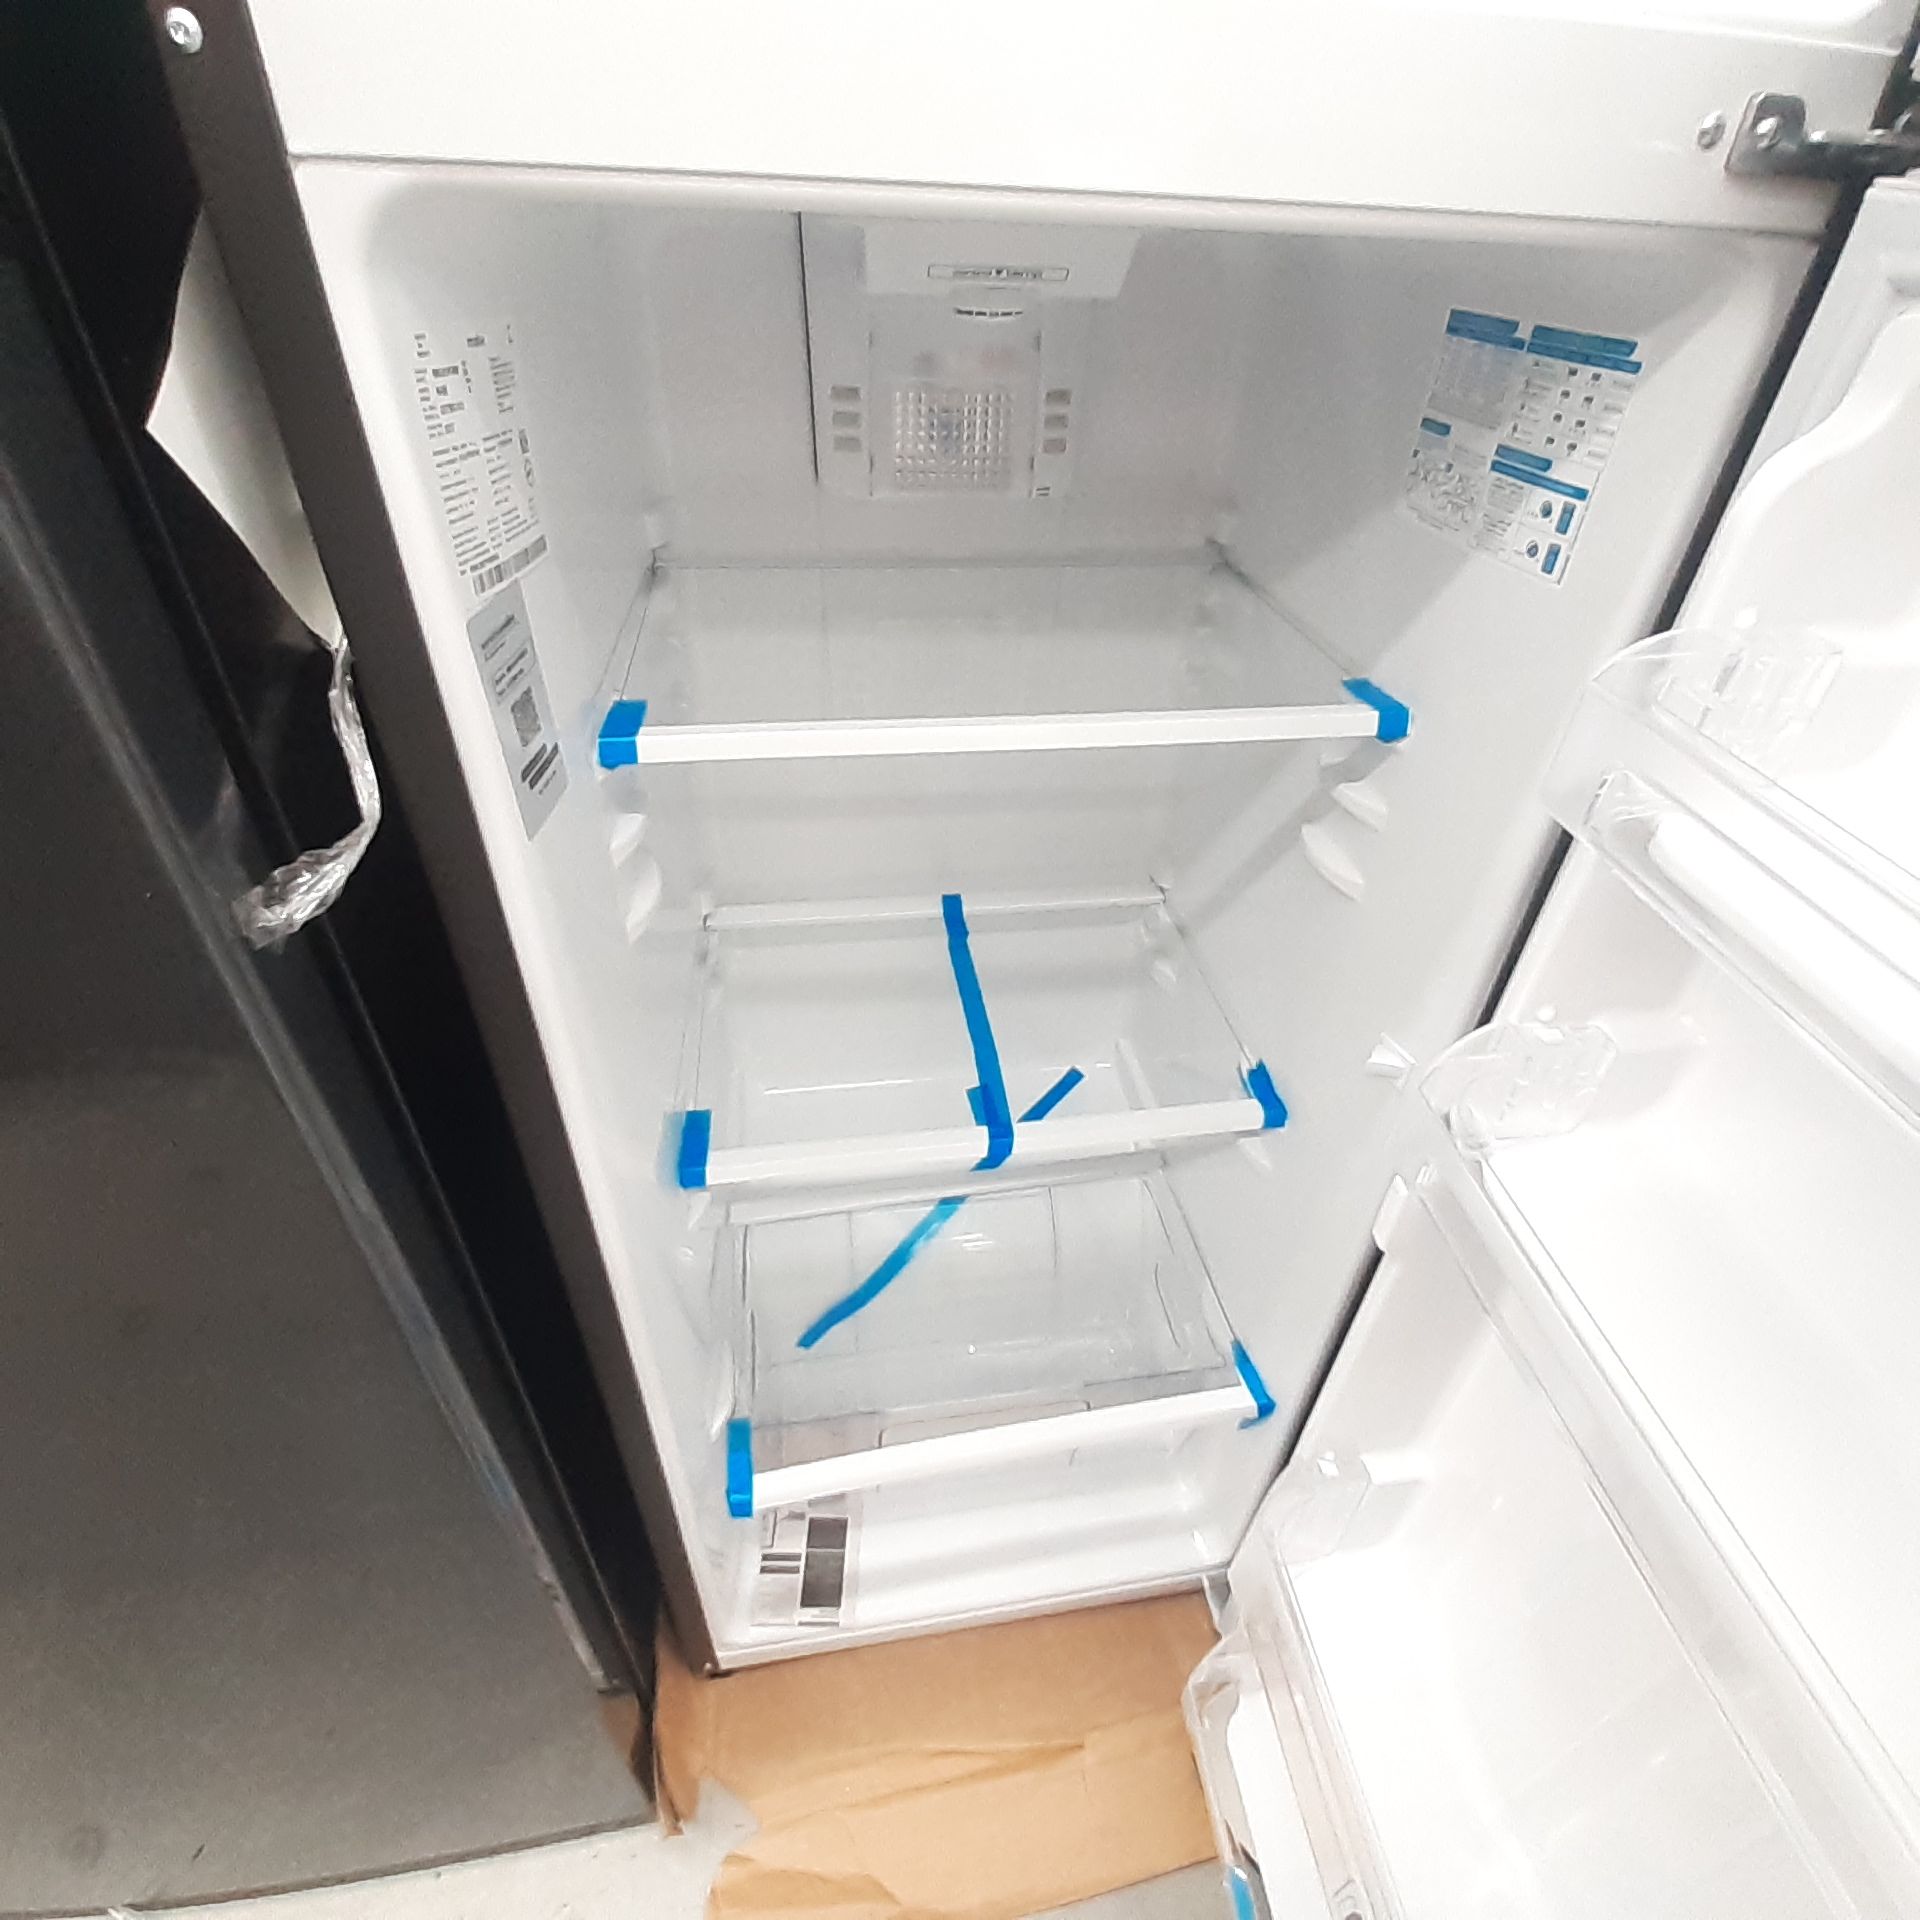 Lote De 2 Refrigeradores Contiene: 1 Refrigerador Marca Mabe, 1 Refrigerador Marca Hisense, Distinto - Image 9 of 14